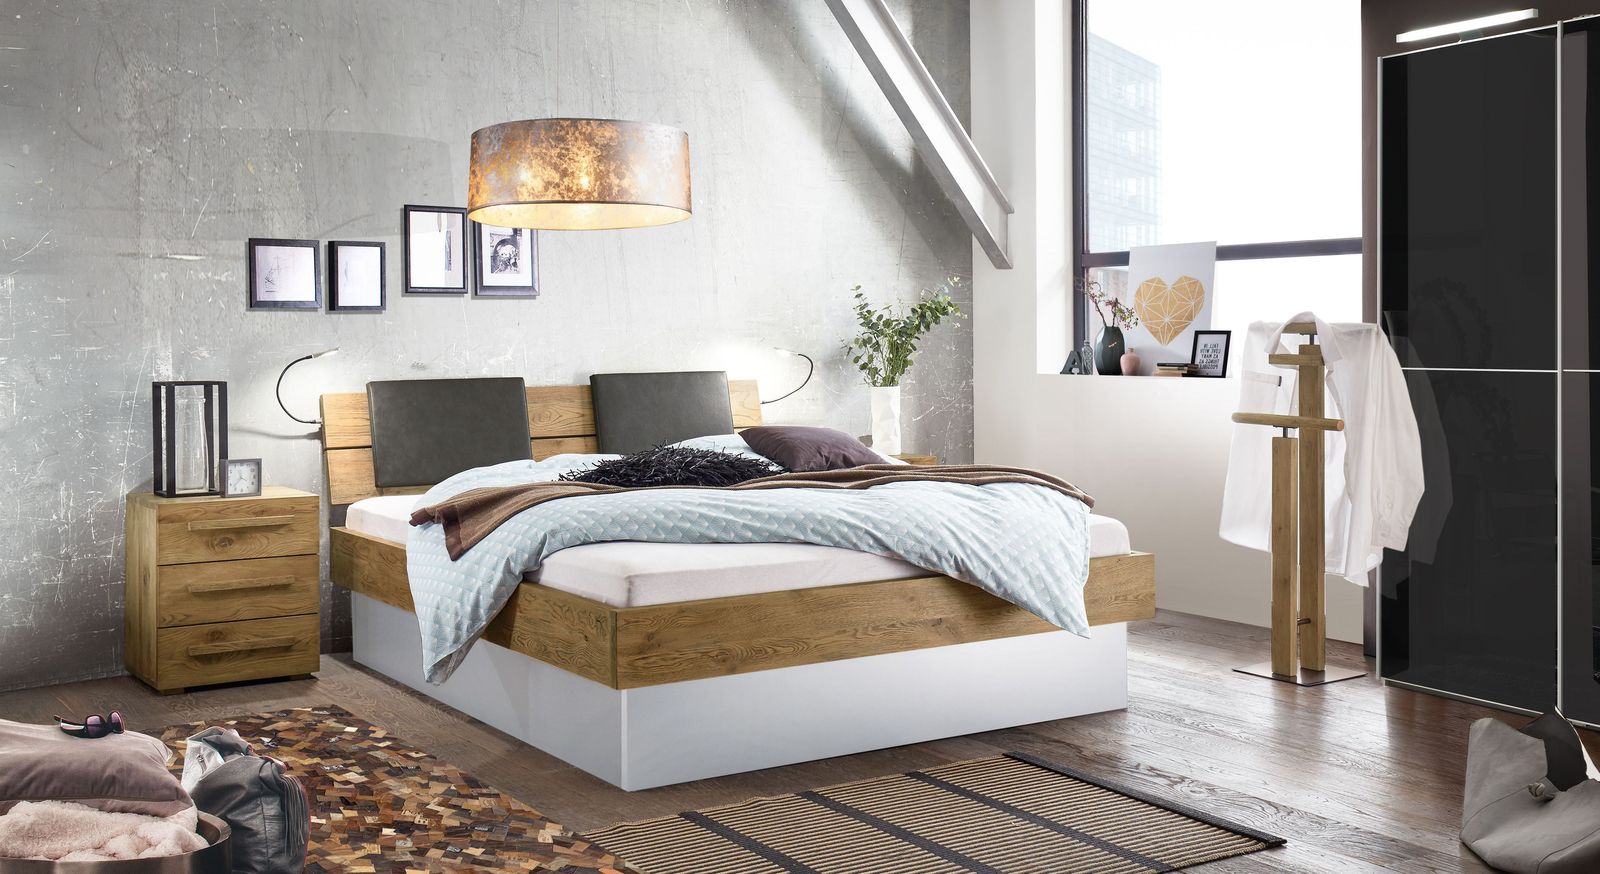 Komplett-Schlafzimmer Boa Vista bestehend aus Bett Nachttisch und Kleiderschrank